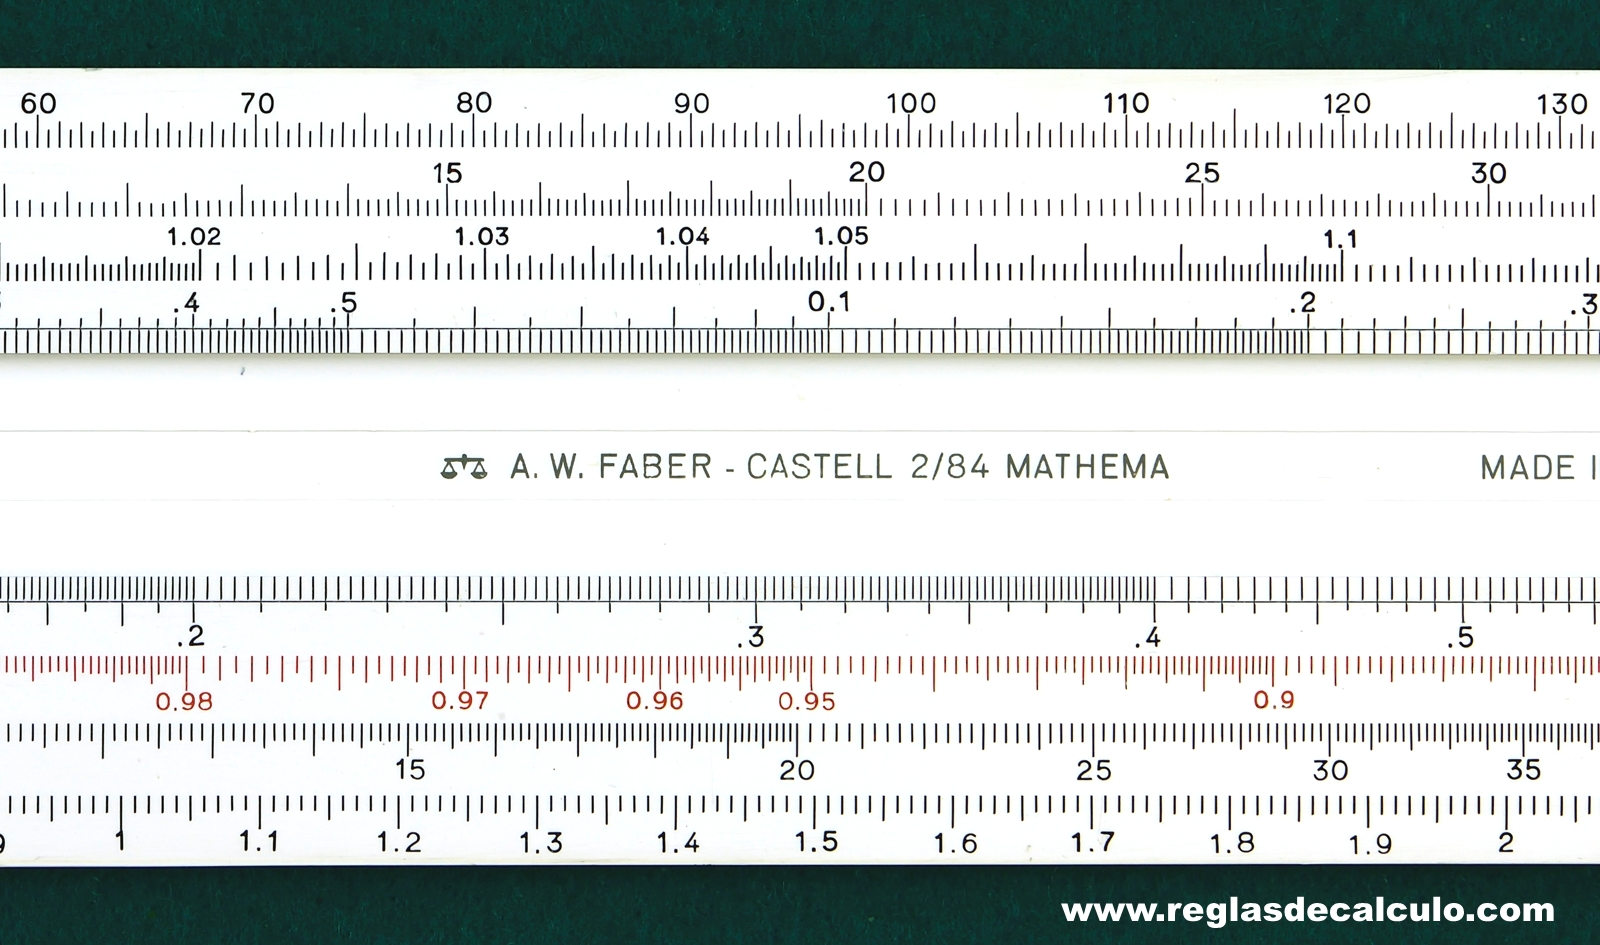 Faber Castell 2/84 Mathema Regla de Calculo Slide rule